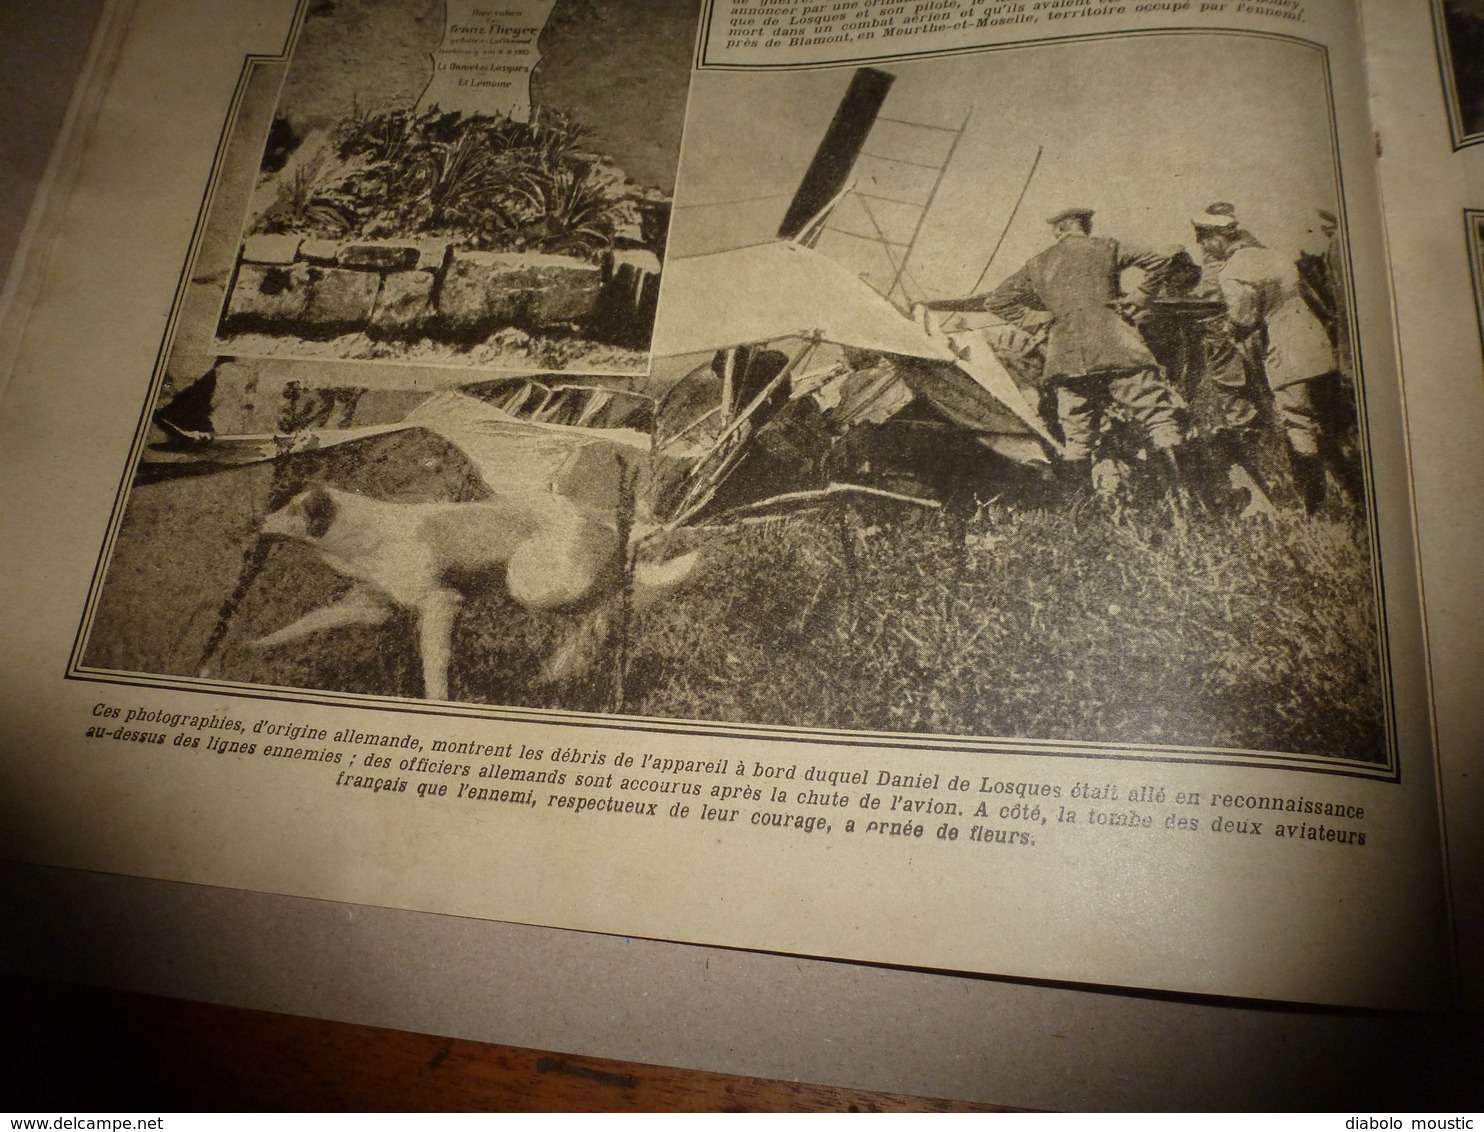 1916 LPDF:Les australiens ;L'aviateur-dessinateur Daniel de Losques est tué;Erzeroum;L'hiver dans les tranchées;etc